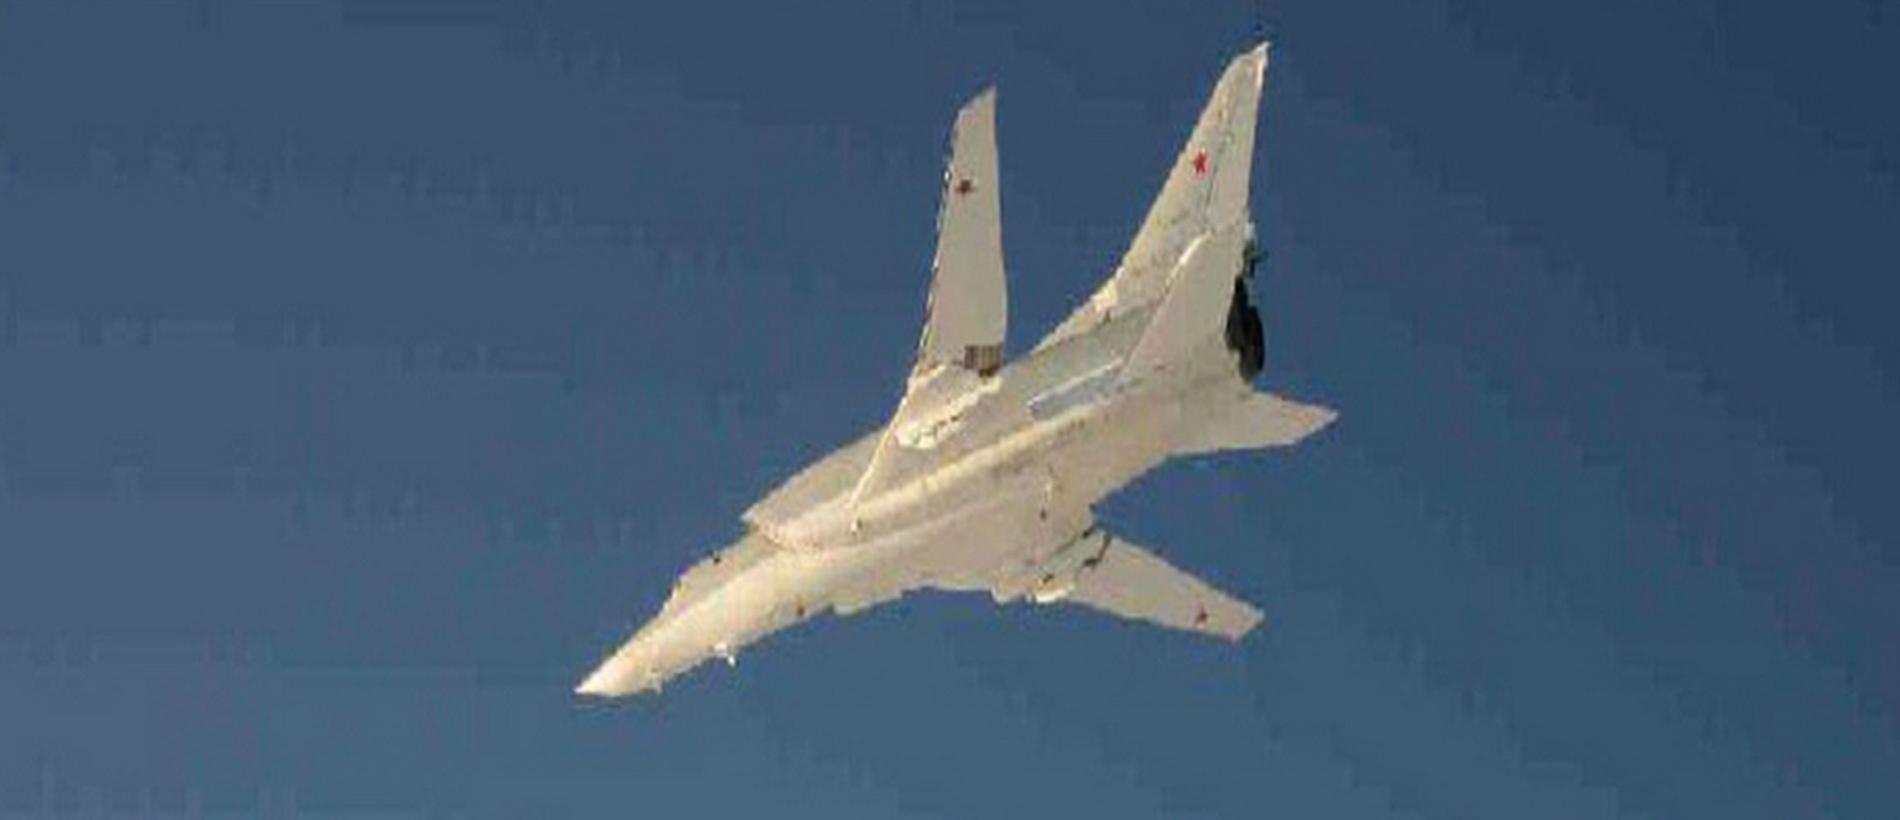 Ryskt strategiskt bombflyg av typen Tu22 fotograferat av svenskt incidentflyg under den ryska övningen i början av december.